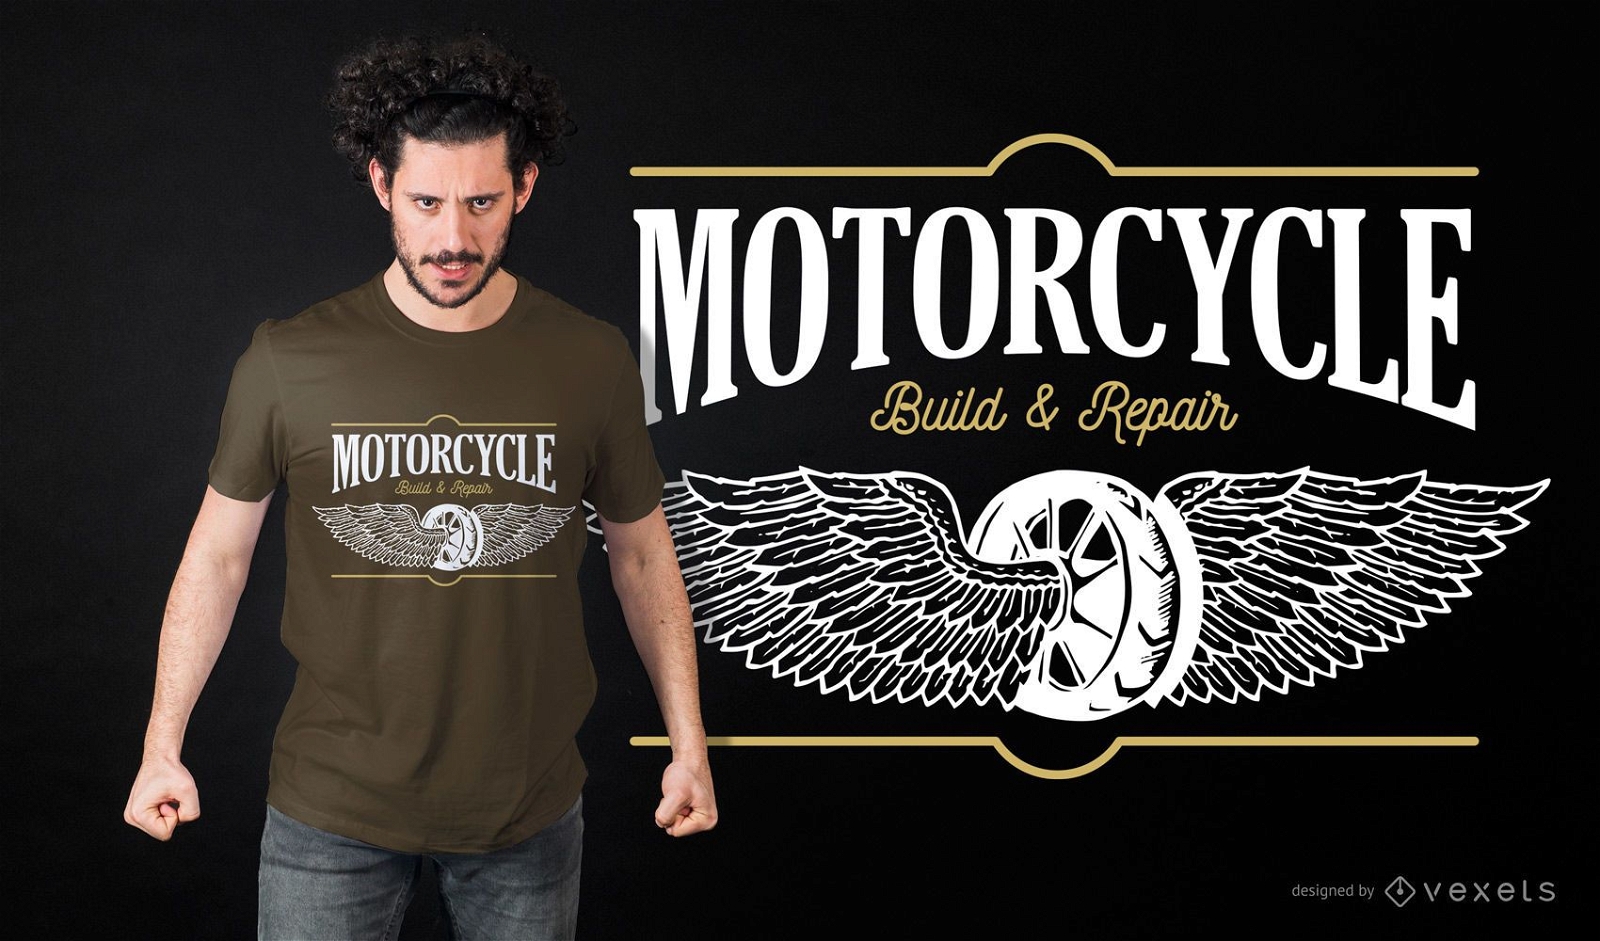 Motorcycle Build & Repair T-shirt Design